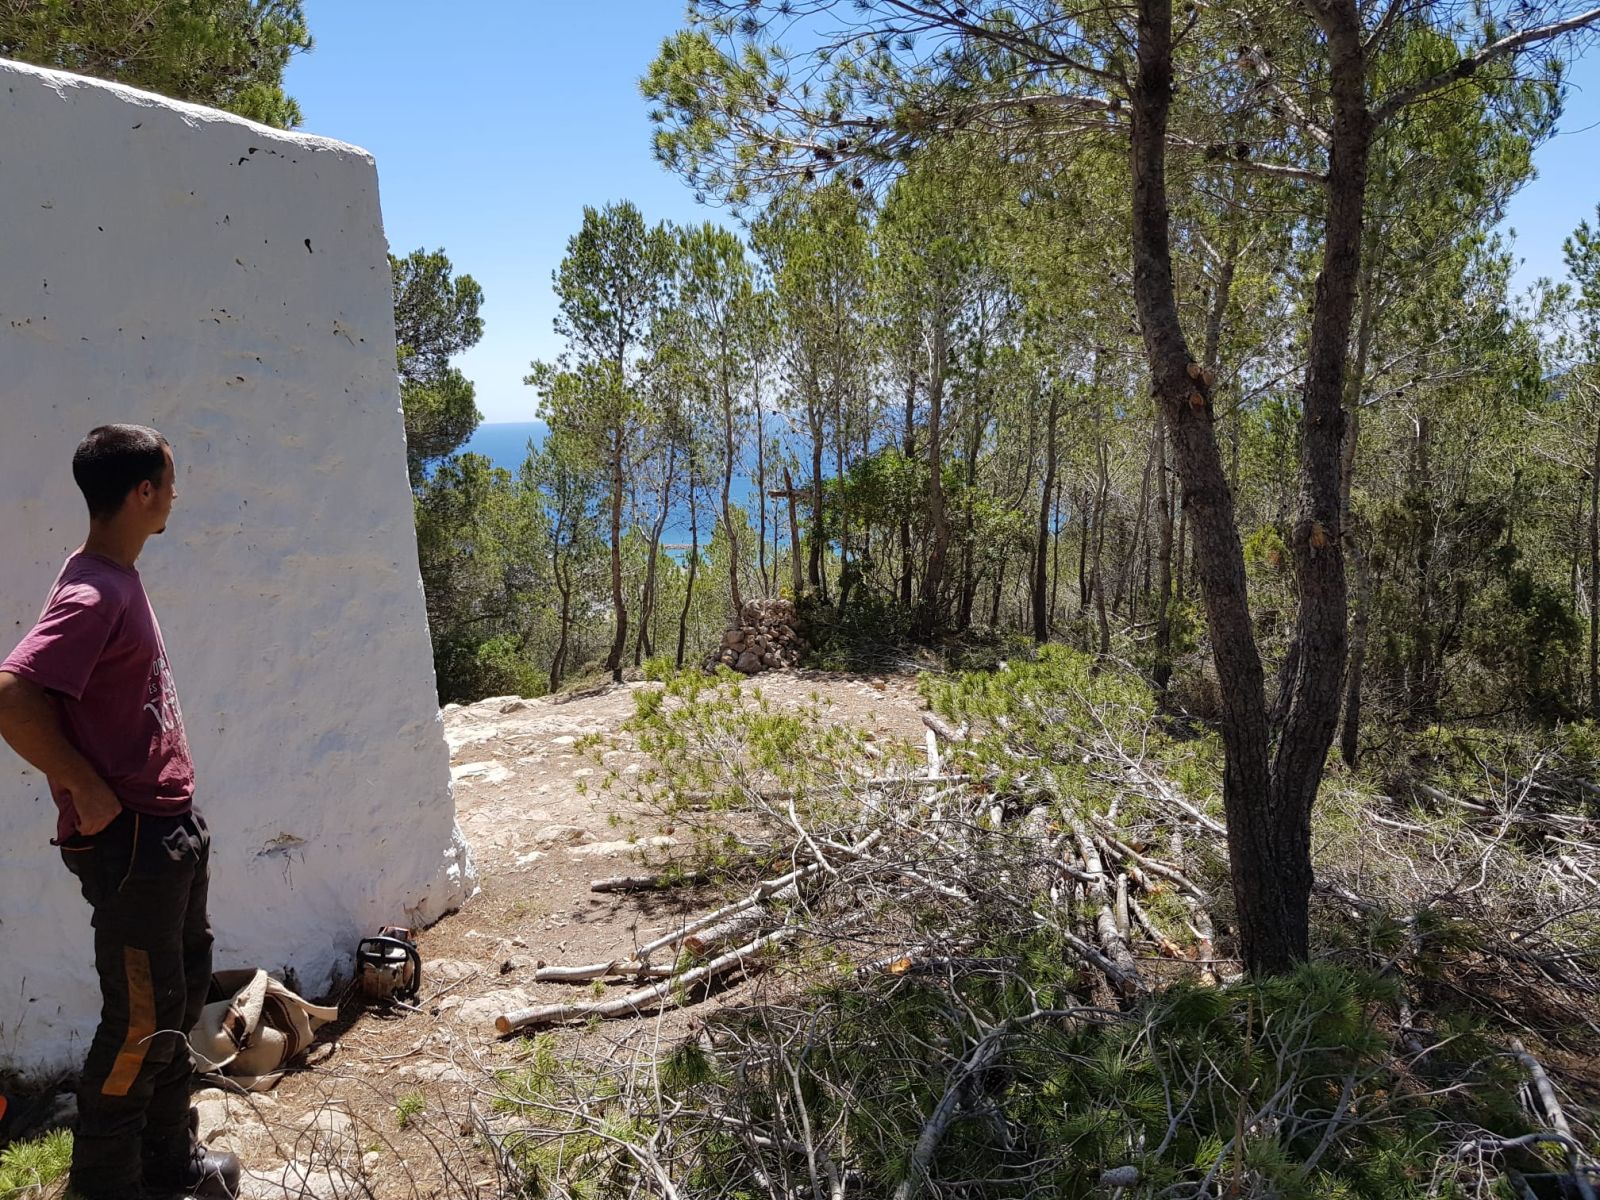 Surt a licitació la creació de 7,6 hectàrees de faixes anti incendi per protegir zones des Figueral i es Cap Martinet